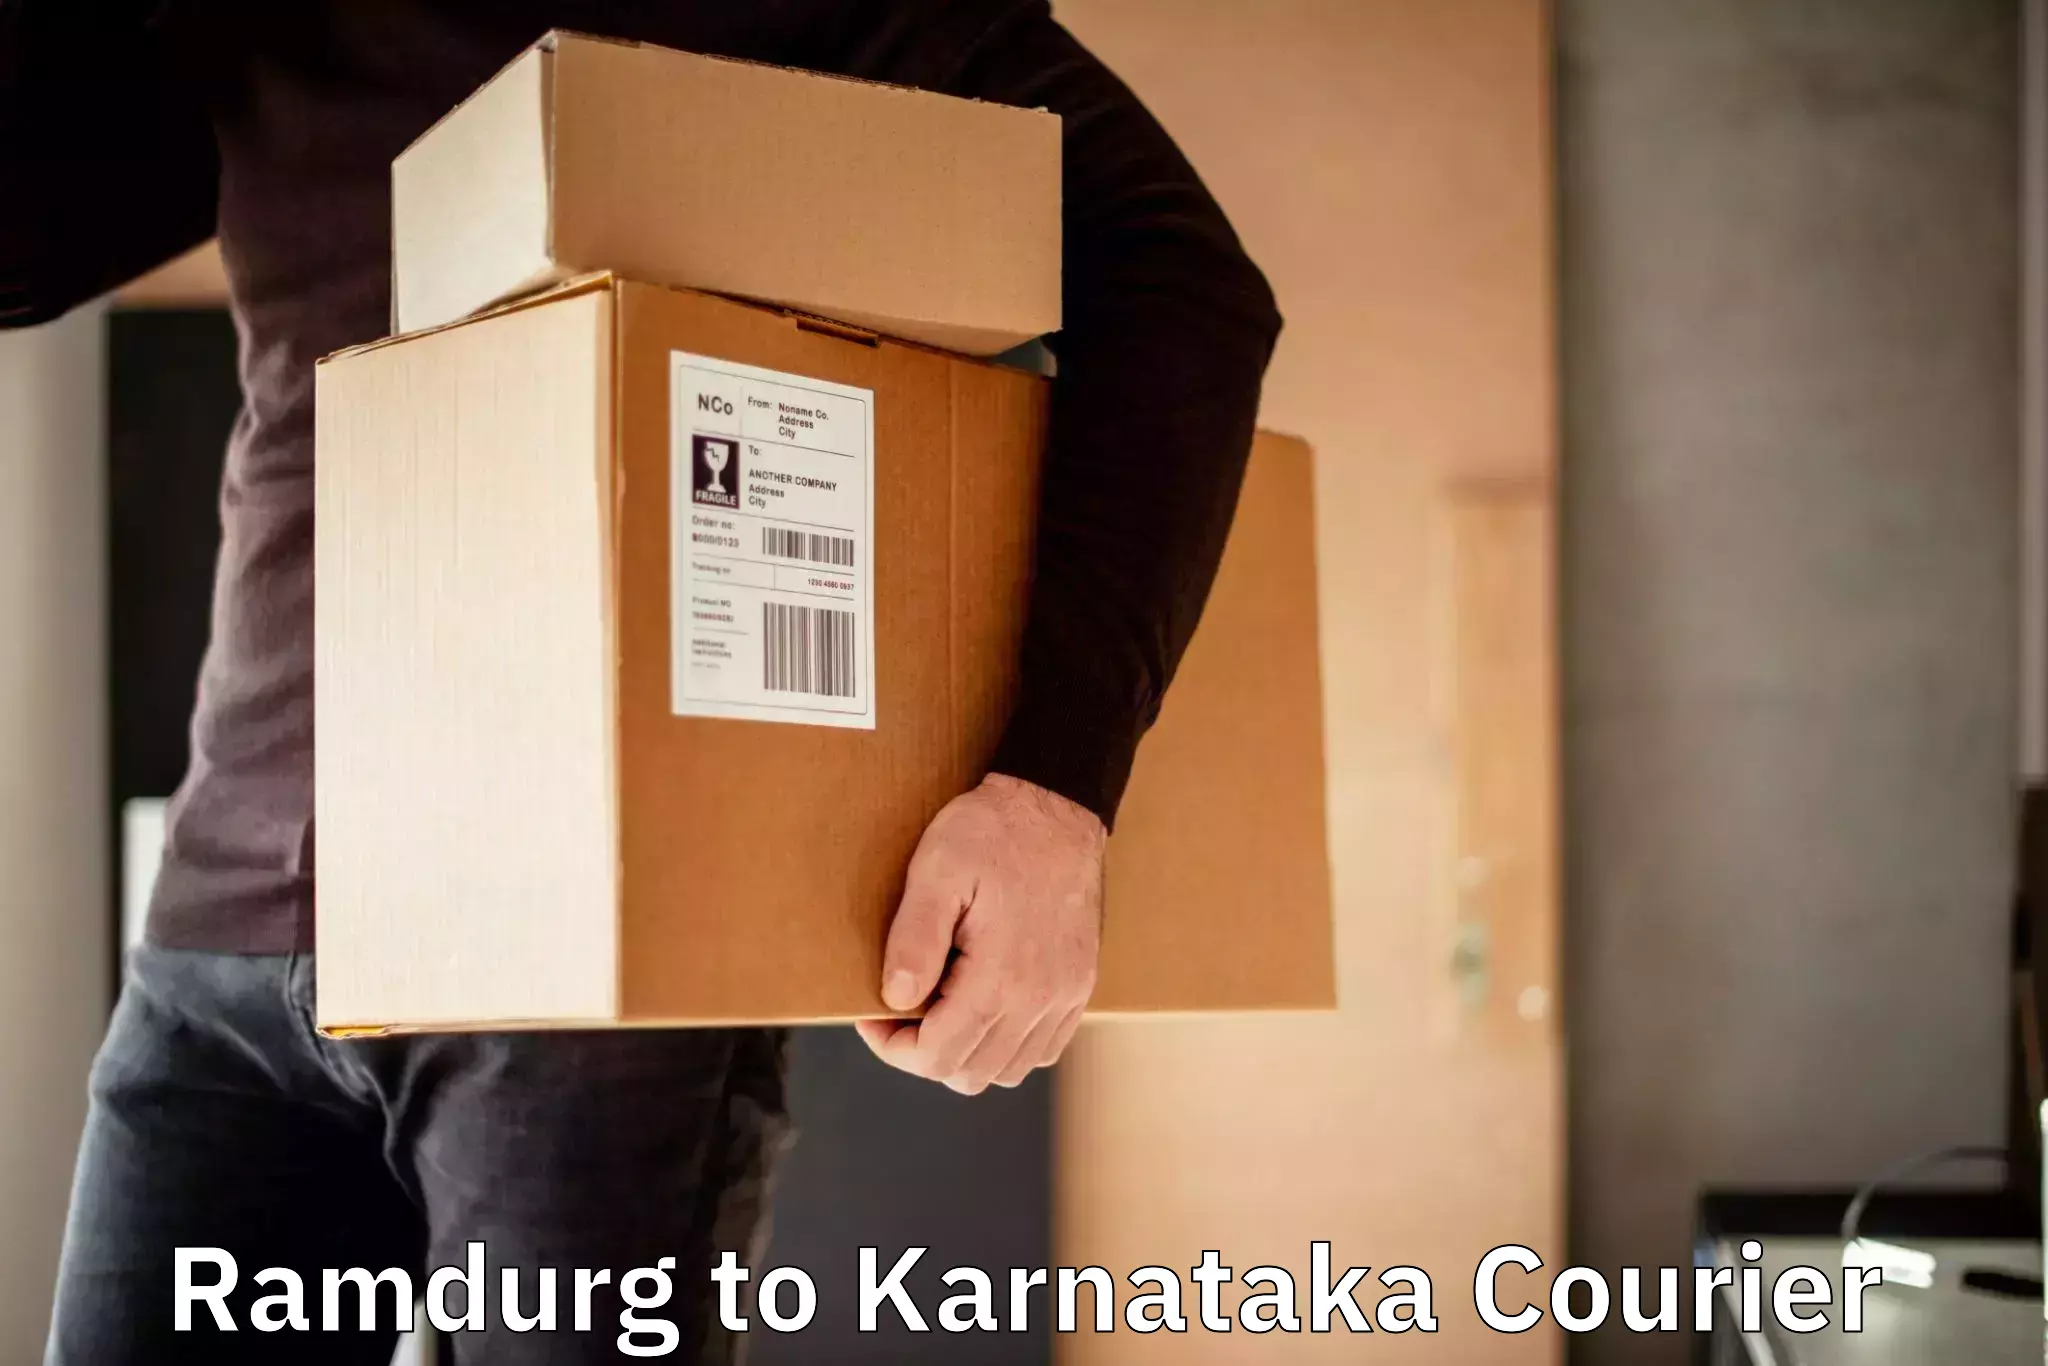 Reliable courier service Ramdurg to Kanakapura